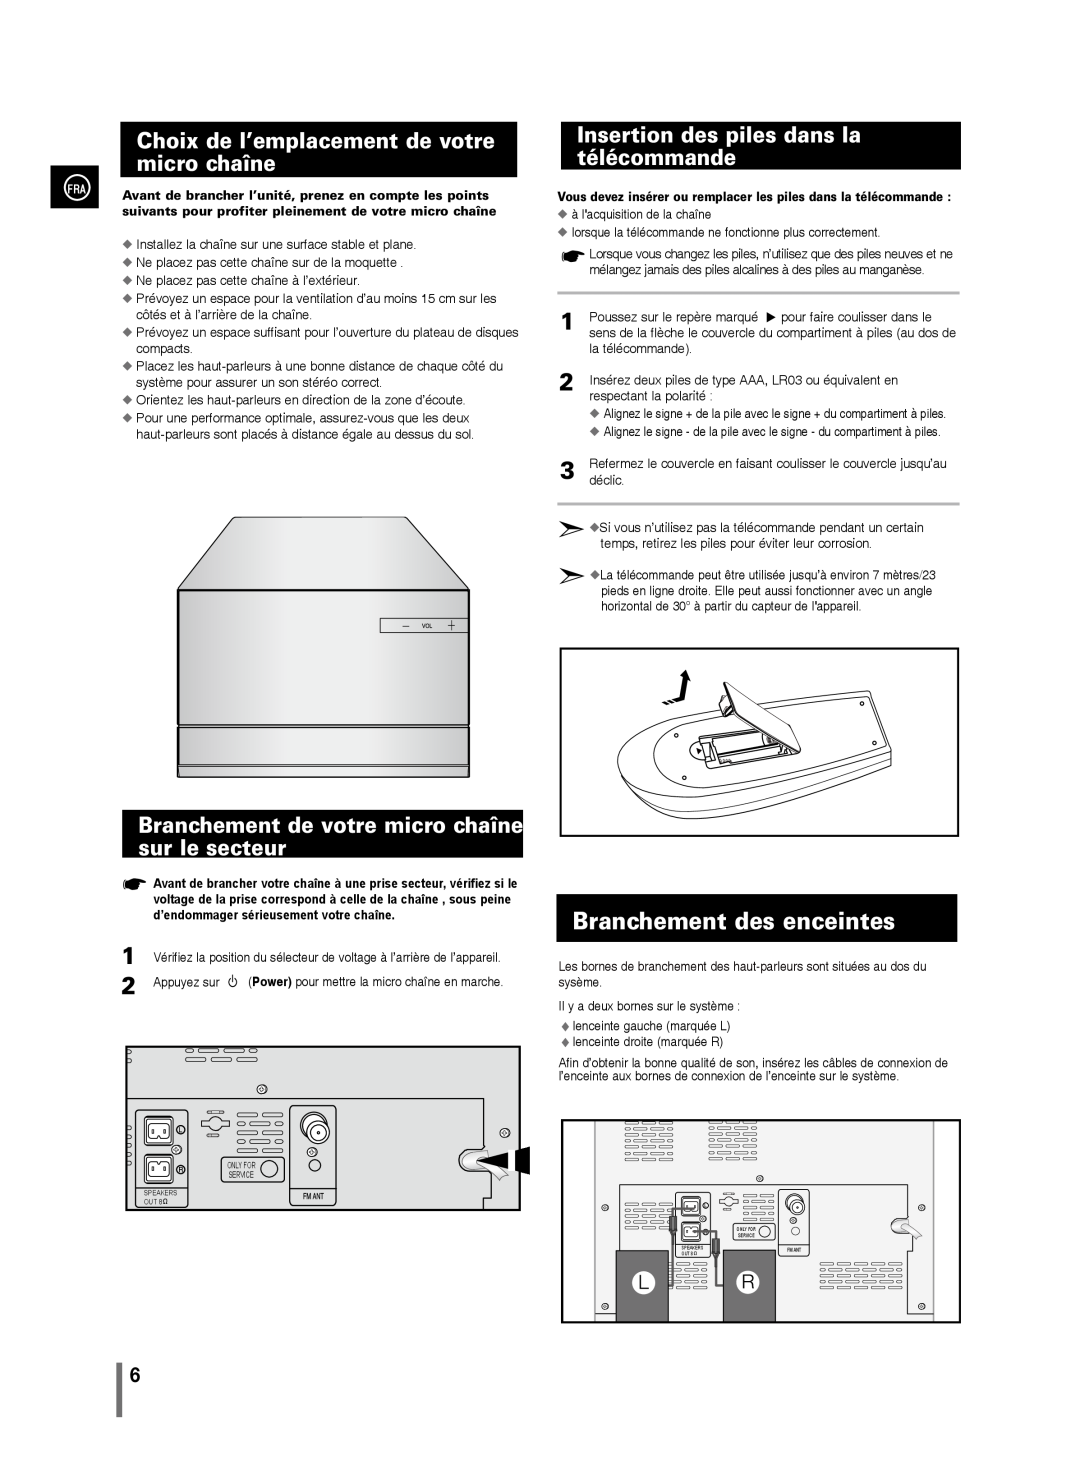 Samsung MM-D330/ZF, MM-D320/ZF manual Branchement des enceintes, Choix de l’emplacement de votre micro chaîne 